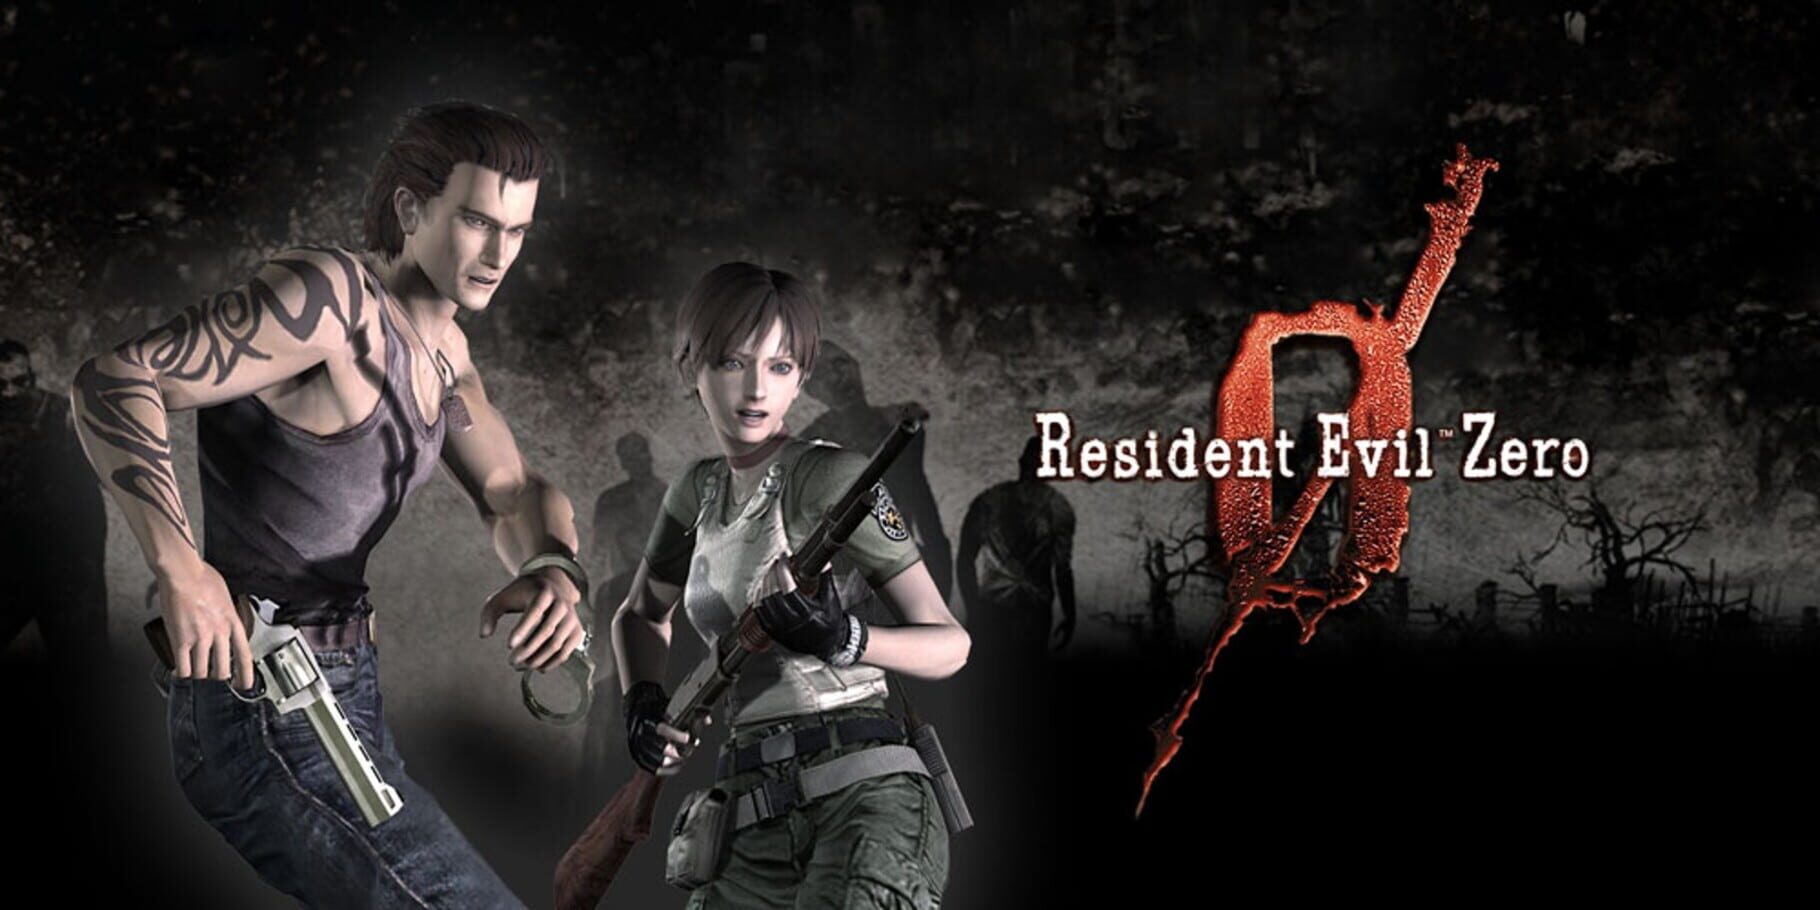 Arte - Resident Evil Zero